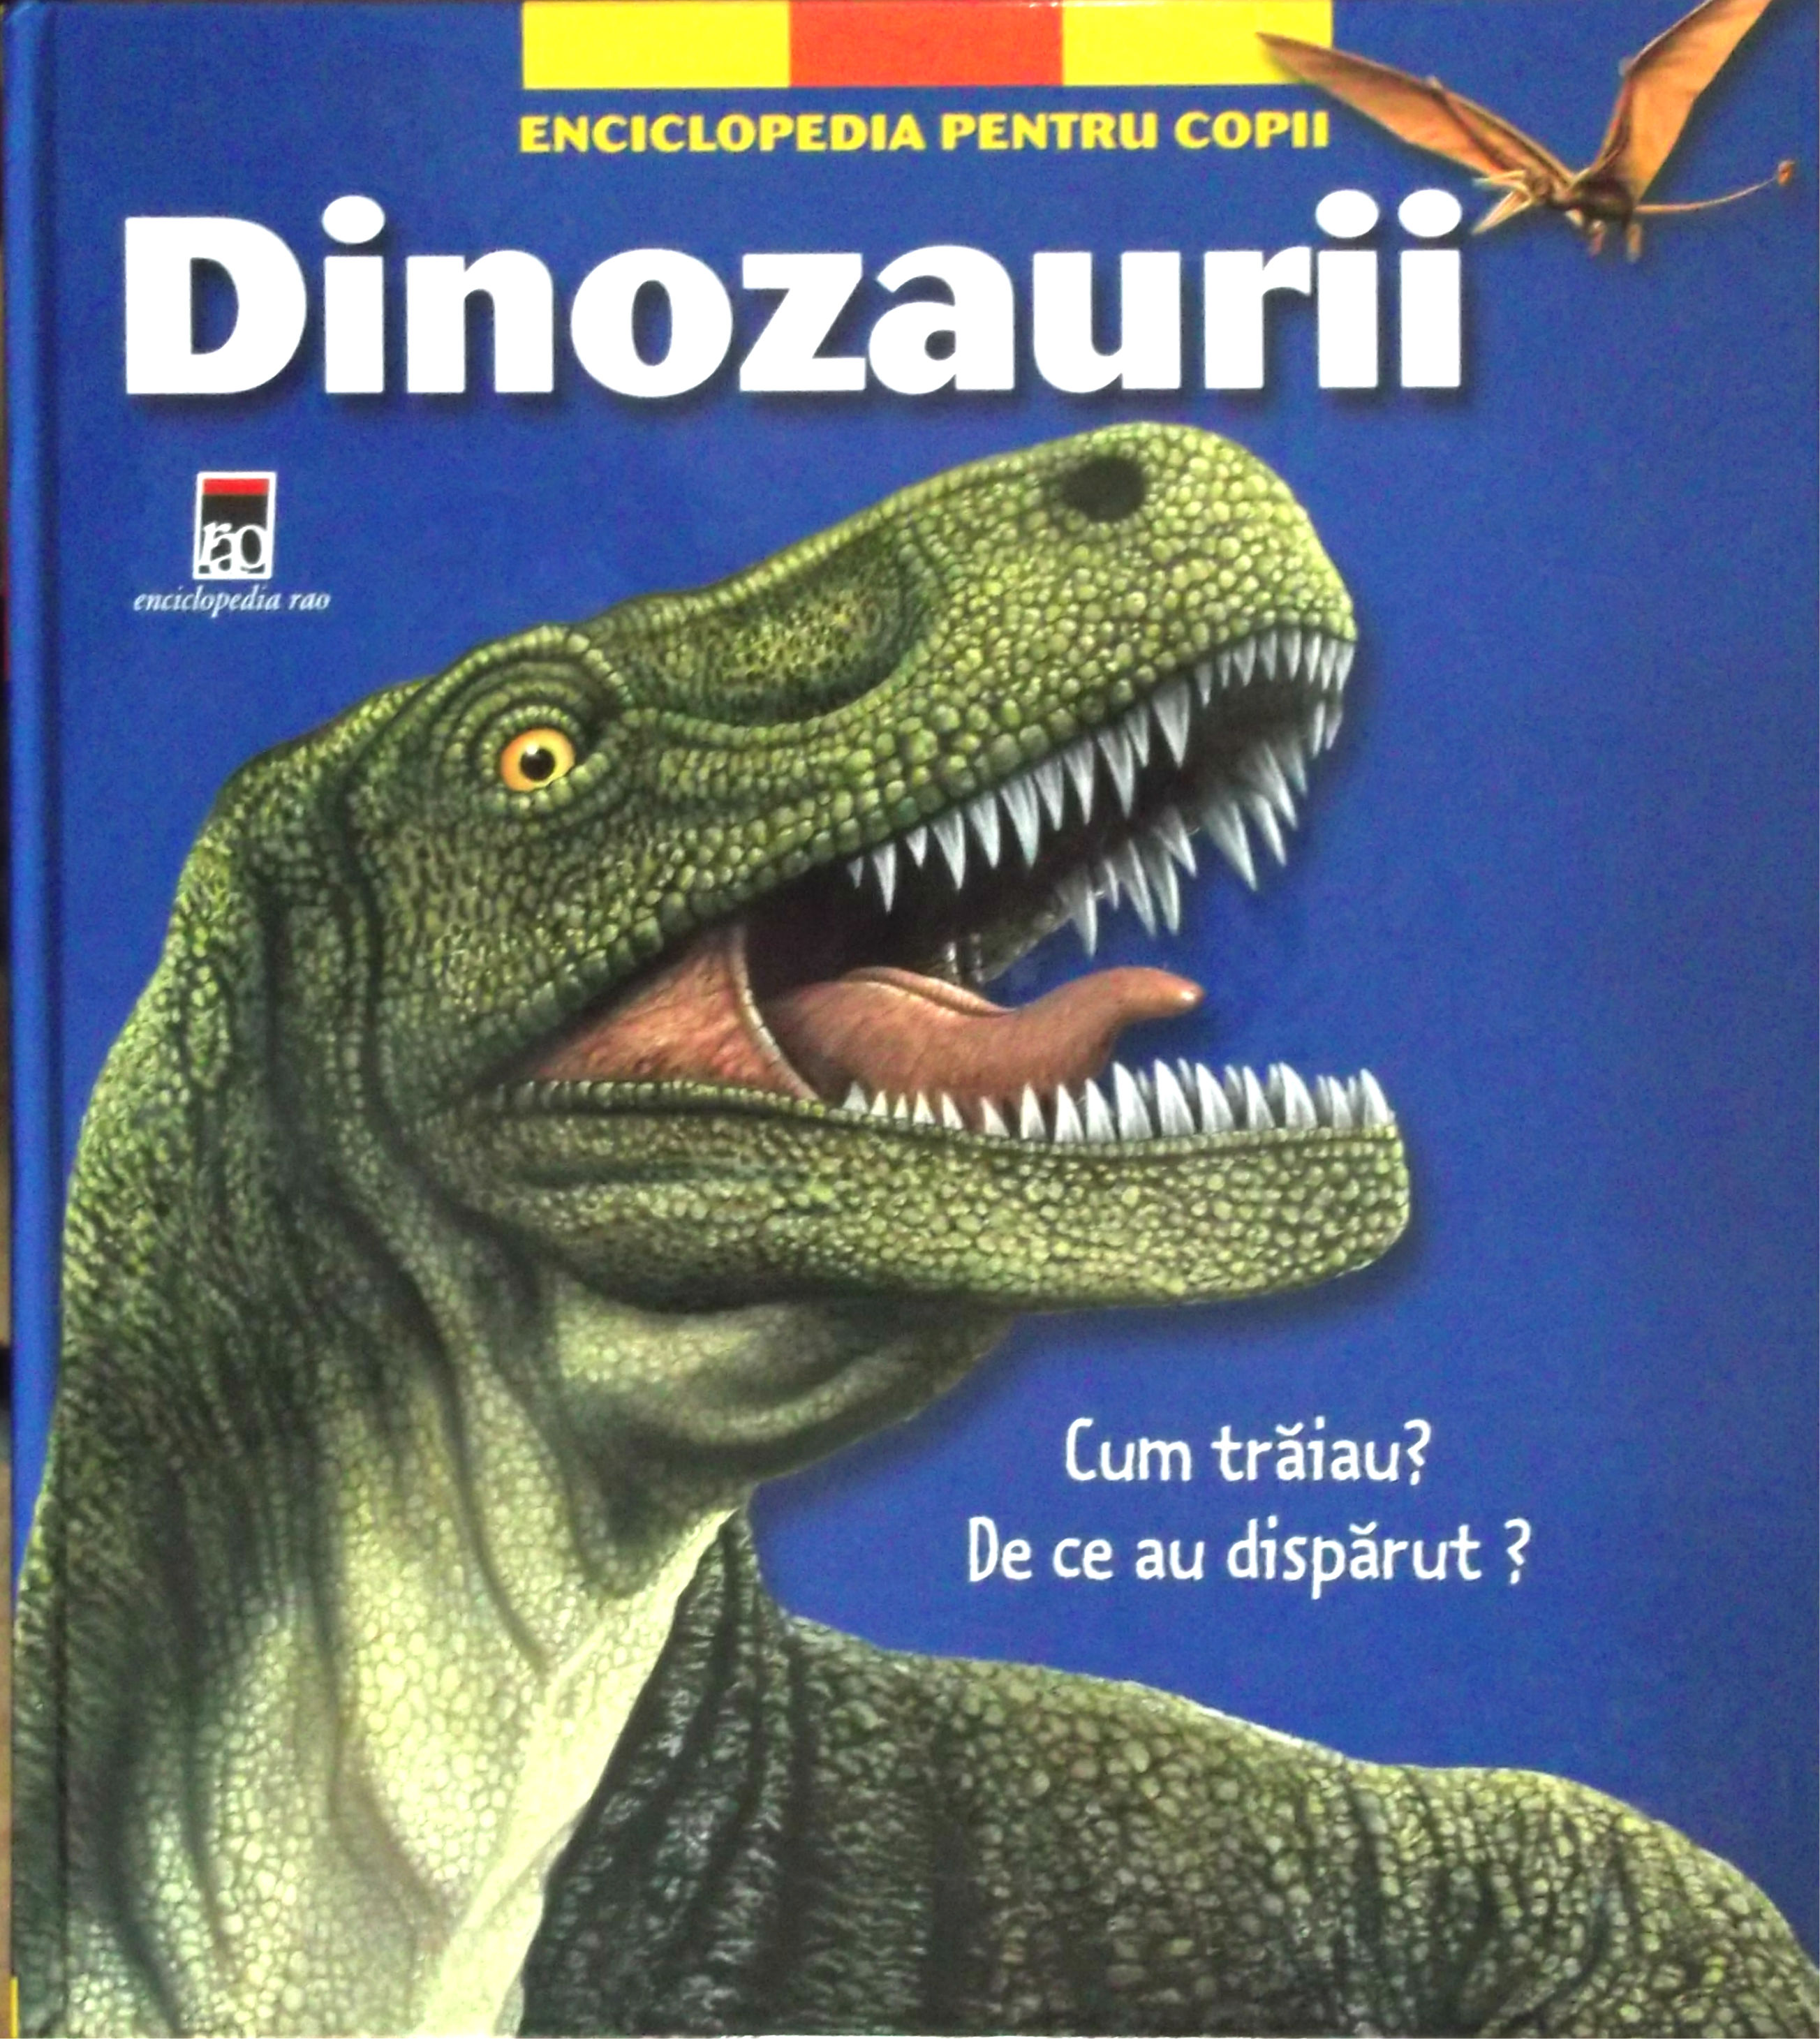 Dinozaurii - Enciclopedia pentru copii